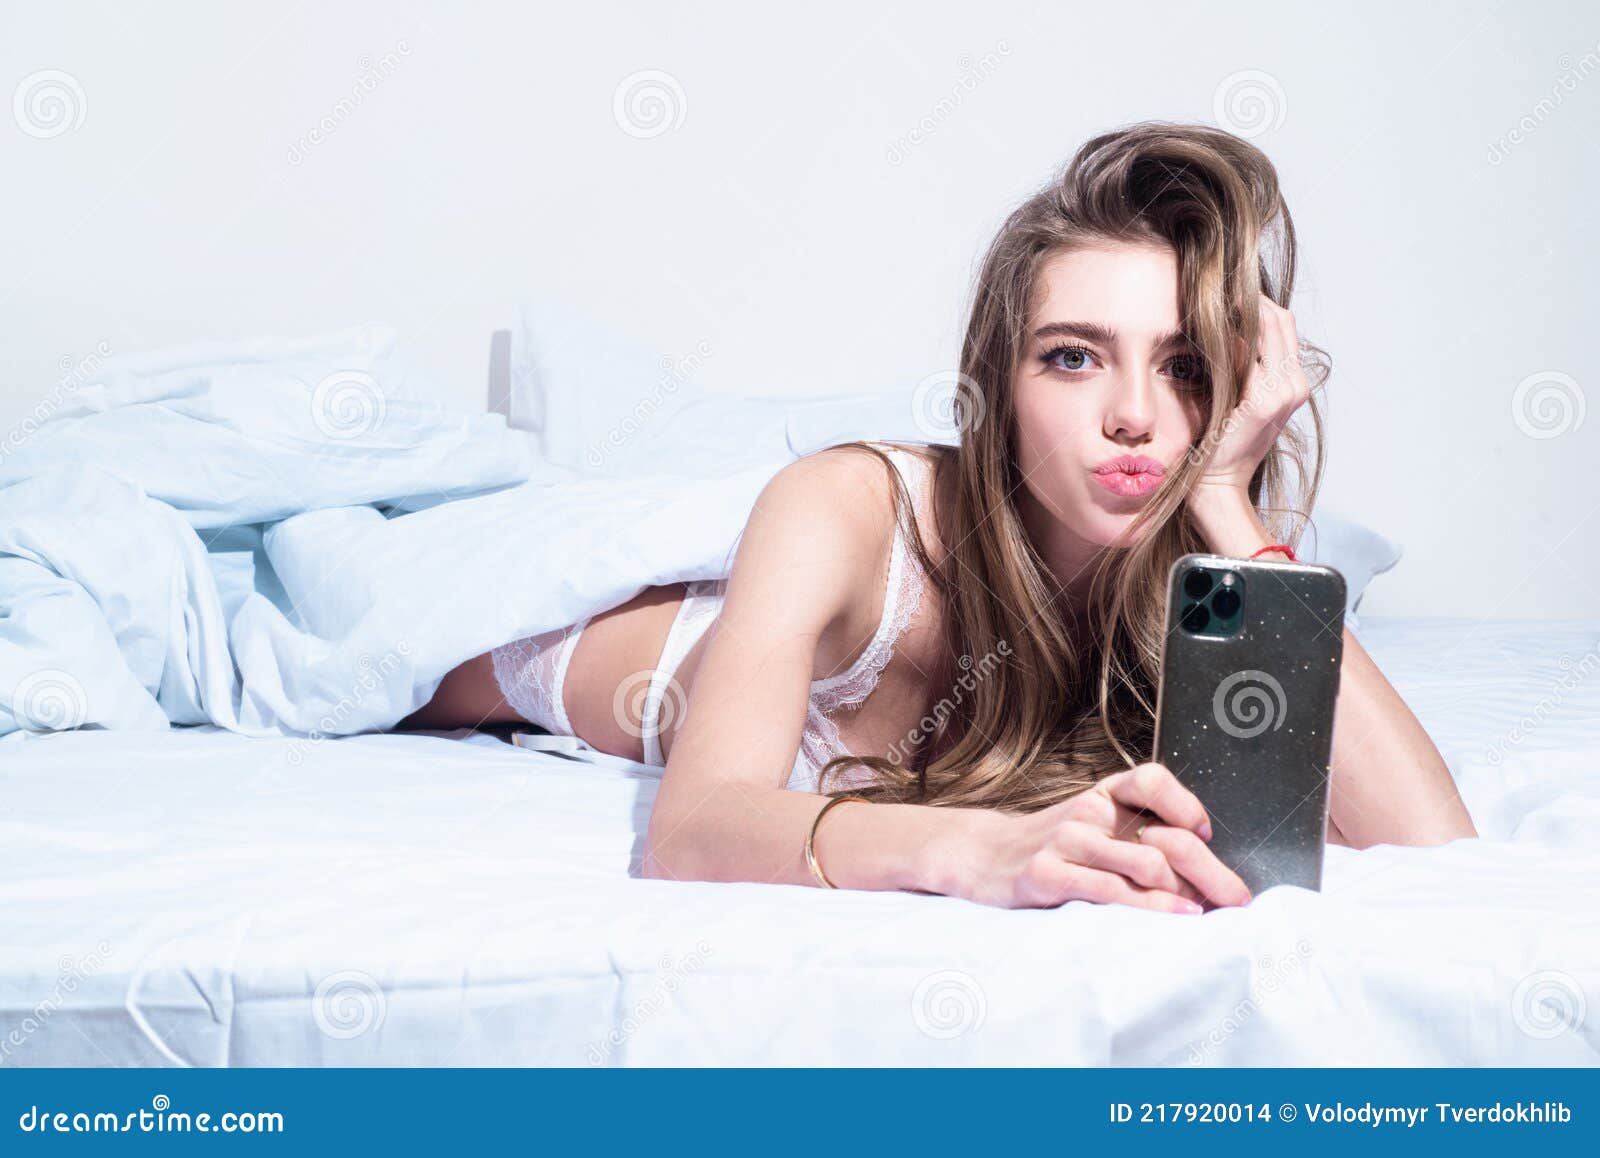 big boob selfie in bed